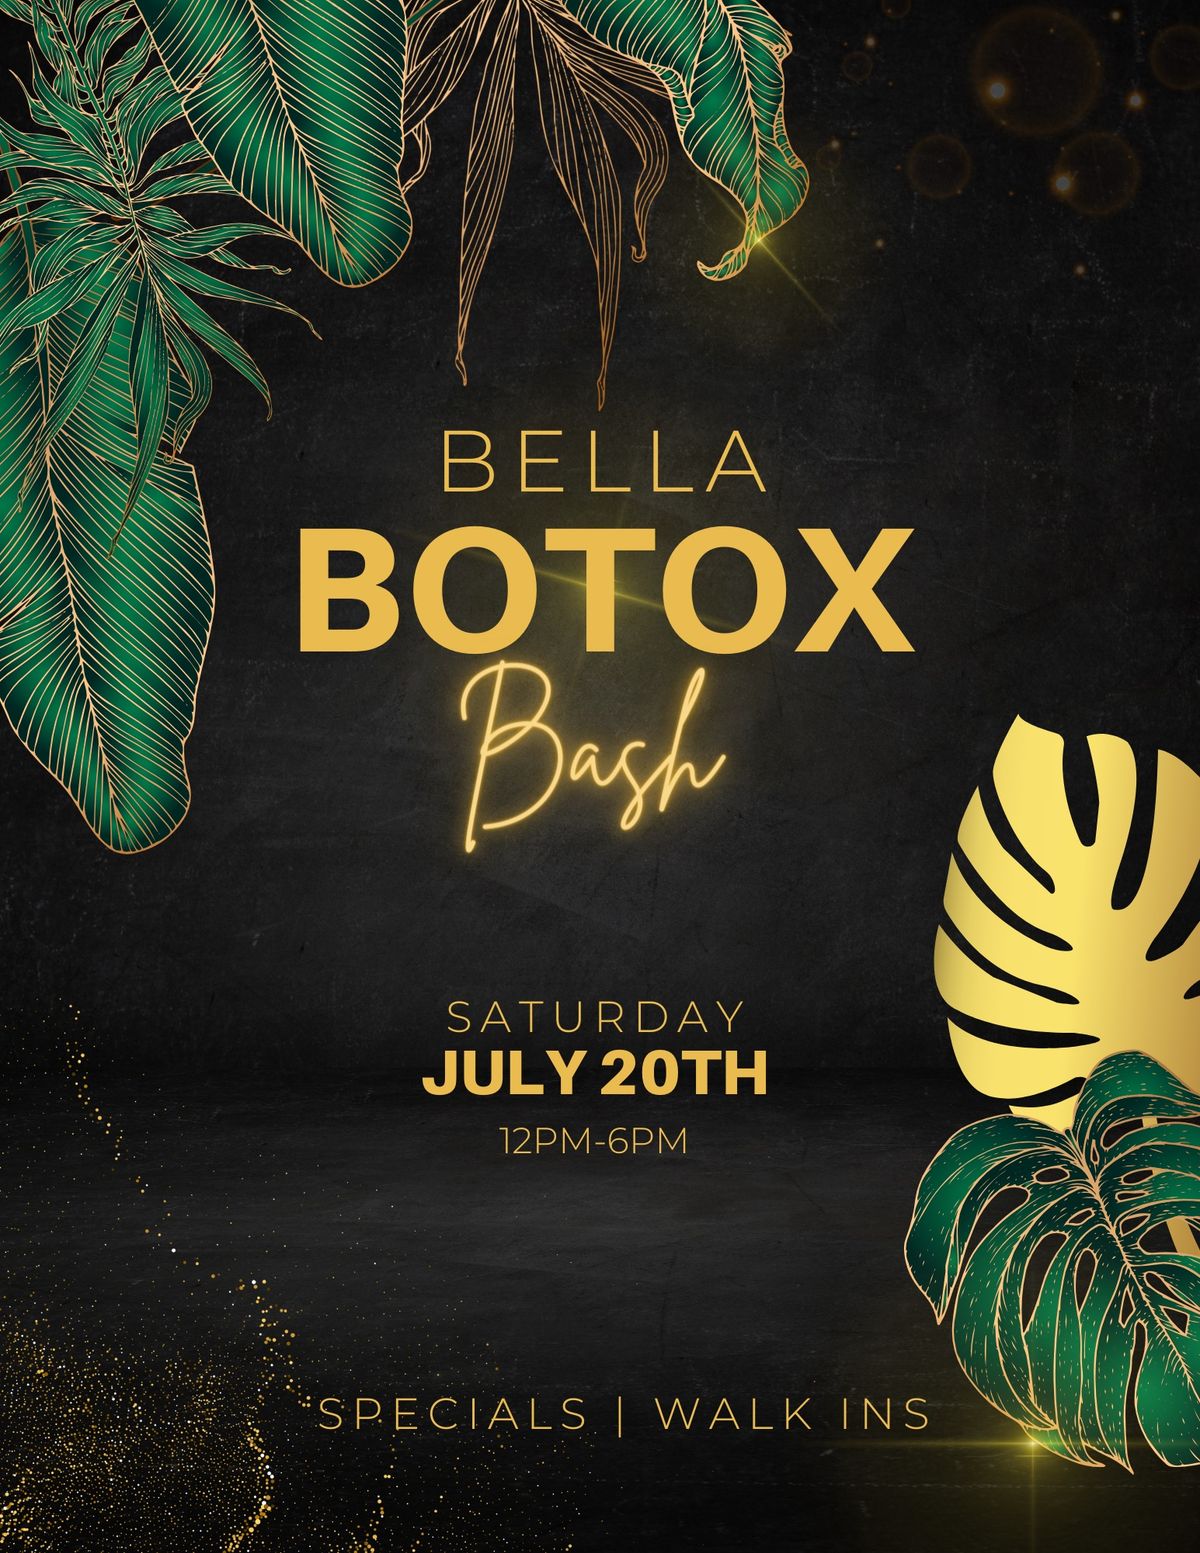 Bella Botox Bash